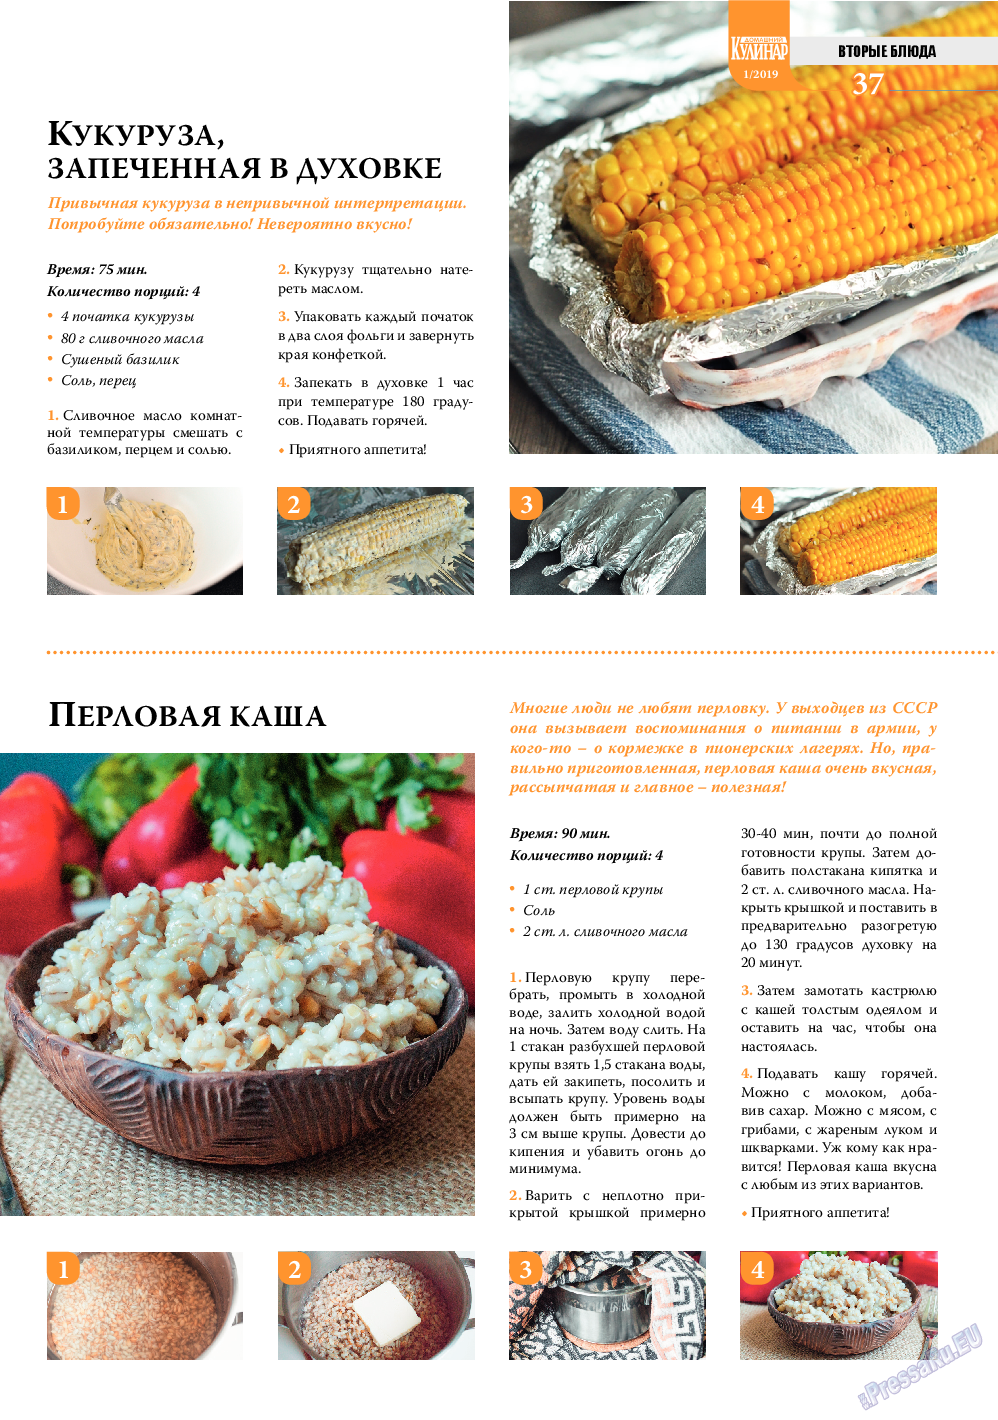 Домашний кулинар, журнал. 2019 №1 стр.37